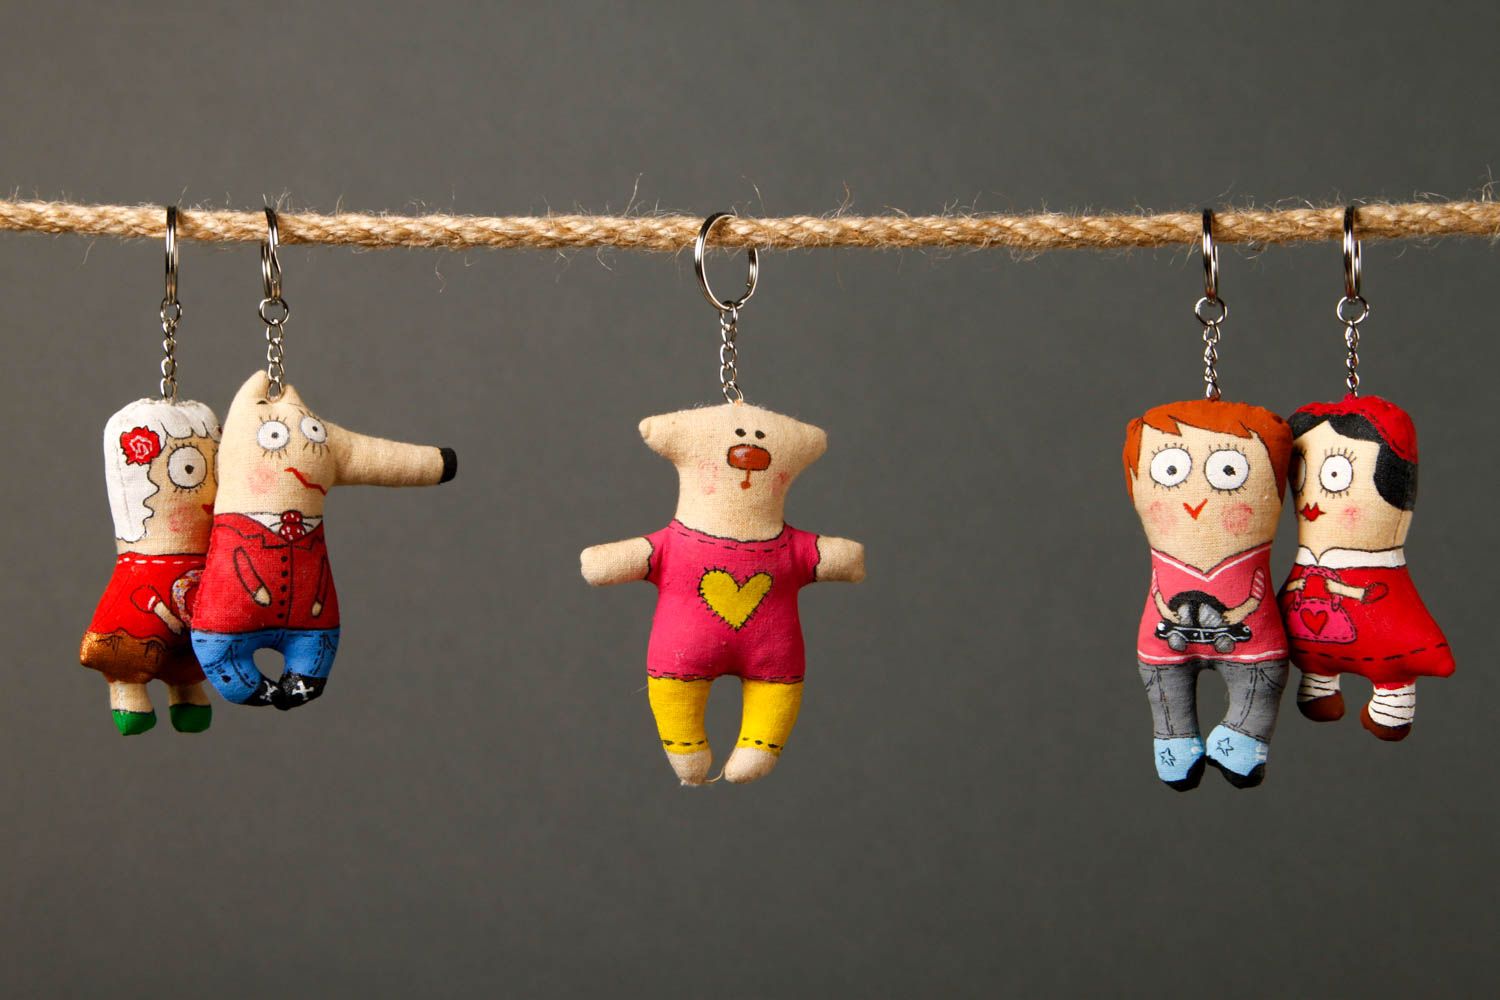 Handmade keychain designer keychain unusual souvenir gift ideas gift for kids photo 1